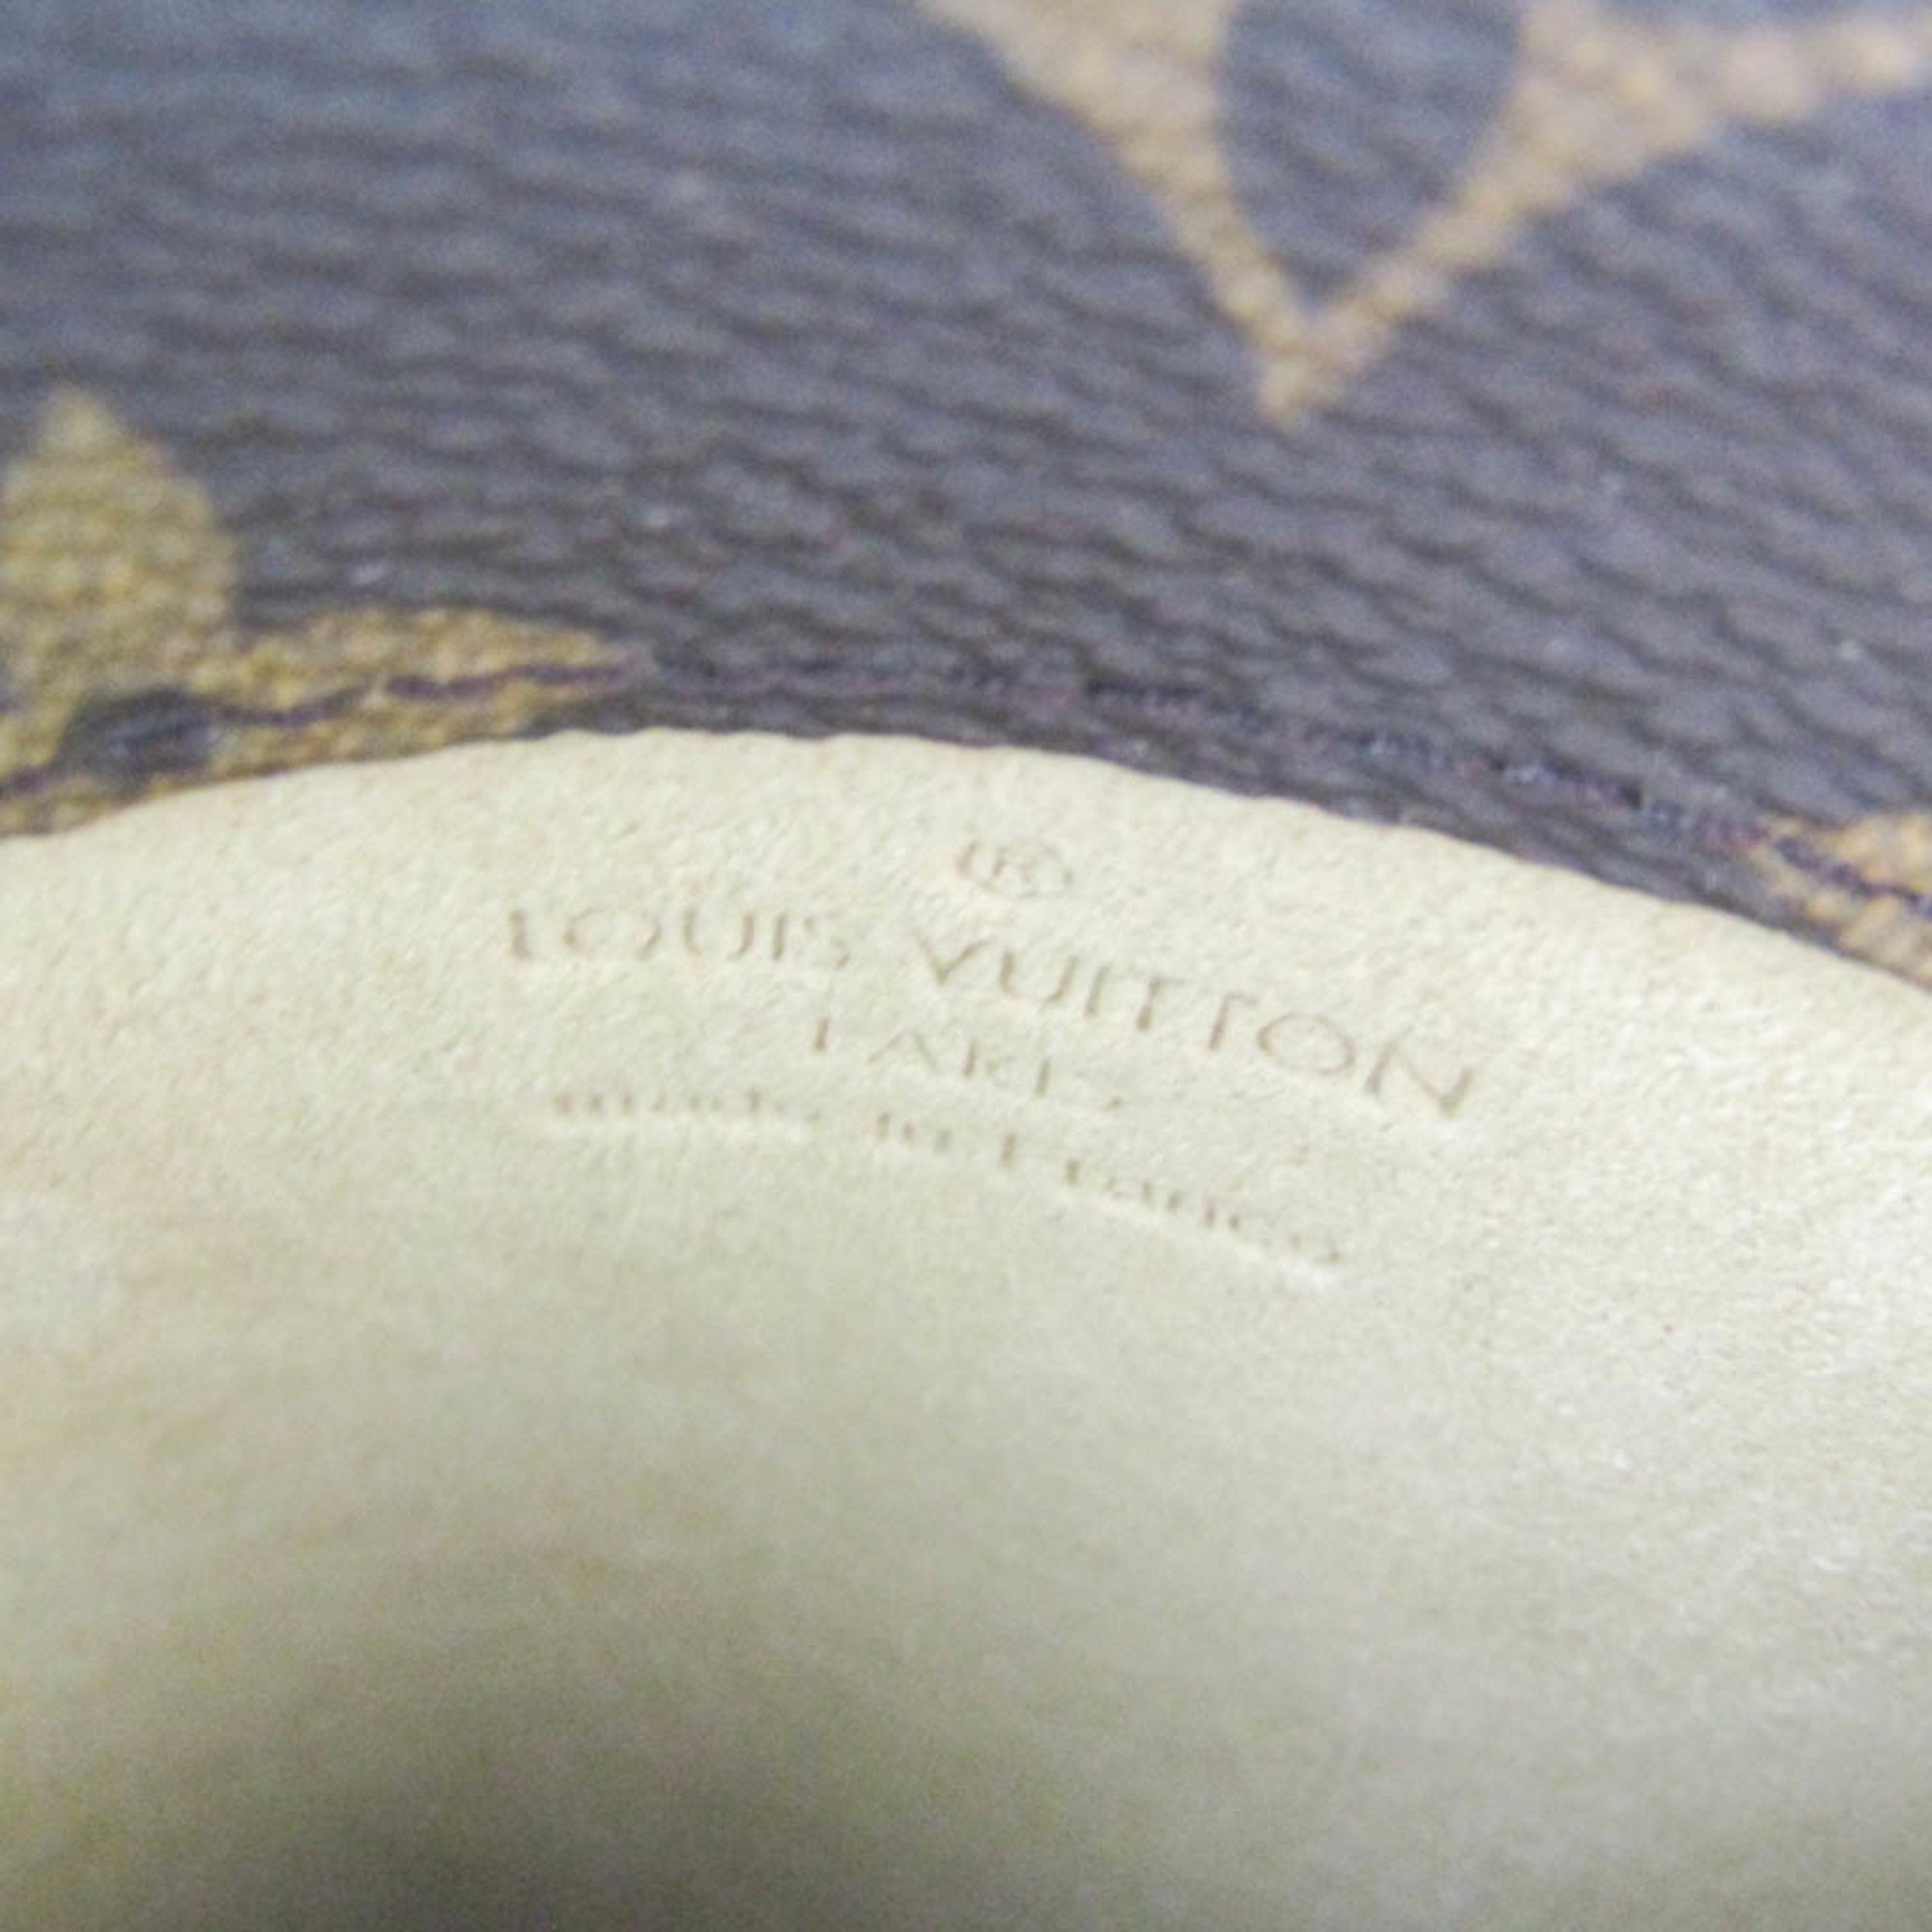 ルイ・ヴィトン(Louis Vuitton) モノグラム エテュイリュネット サーンプル M62962 メガネケース(ソフトケース), モノグラム